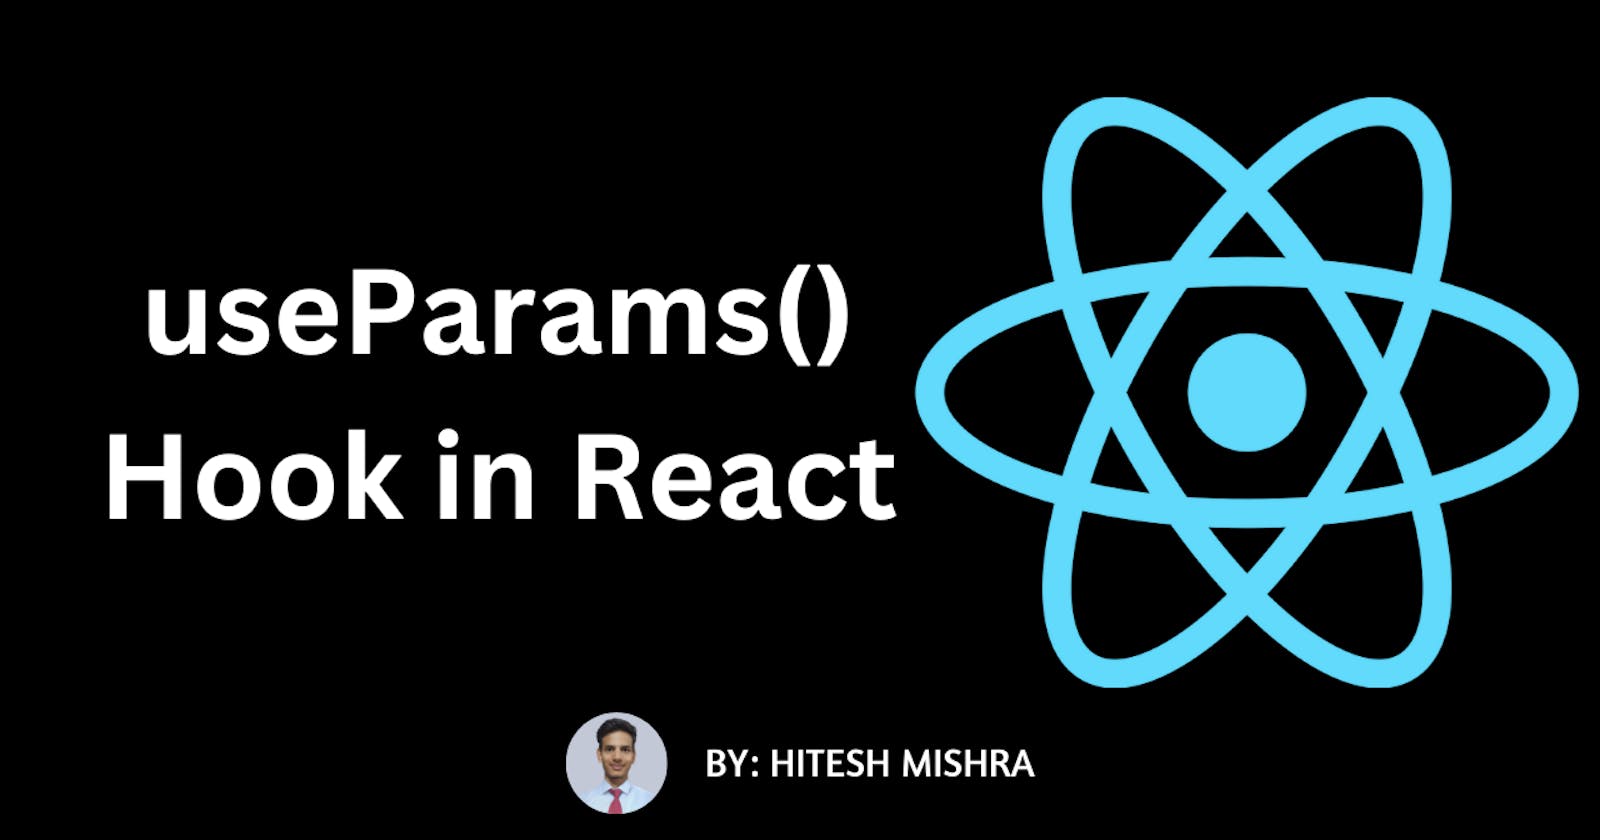 useParams() hook in react